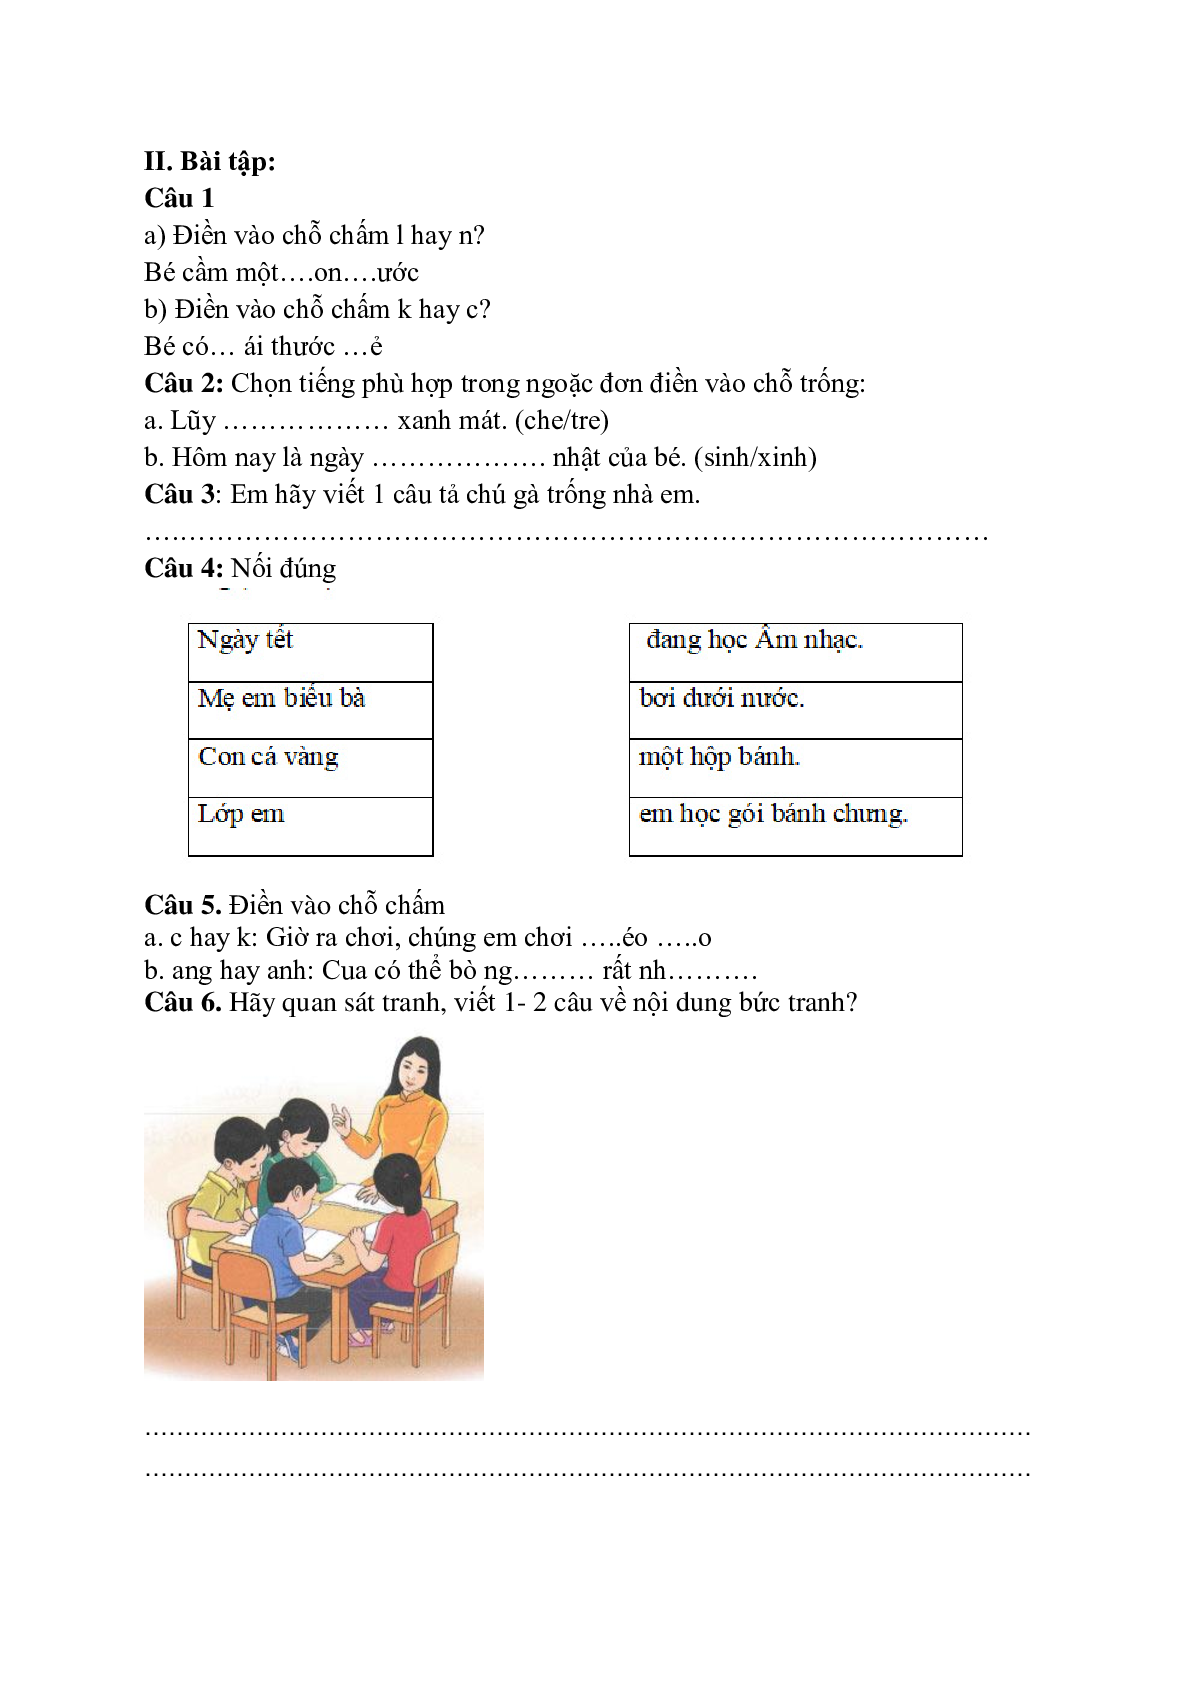 Đề ôn tập Tiếng Việt lớp 1 cuối kì 2 - đề 1 (trang 5)